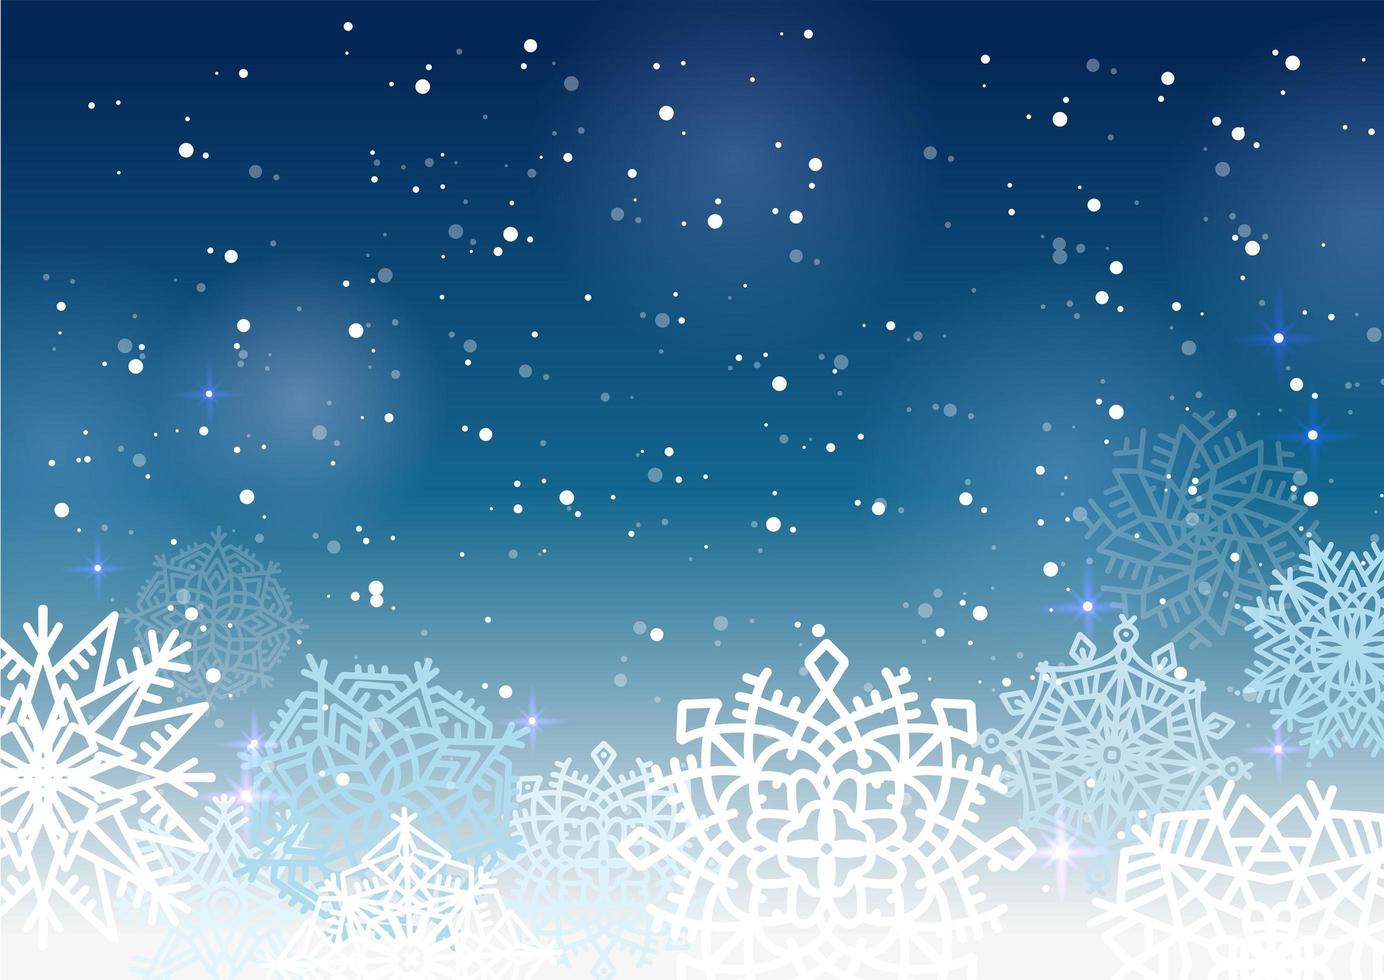 vektor illustration av en vinter mörkblå bakgrund med stora snöflingor. utrymme för text. semester nyår affisch.